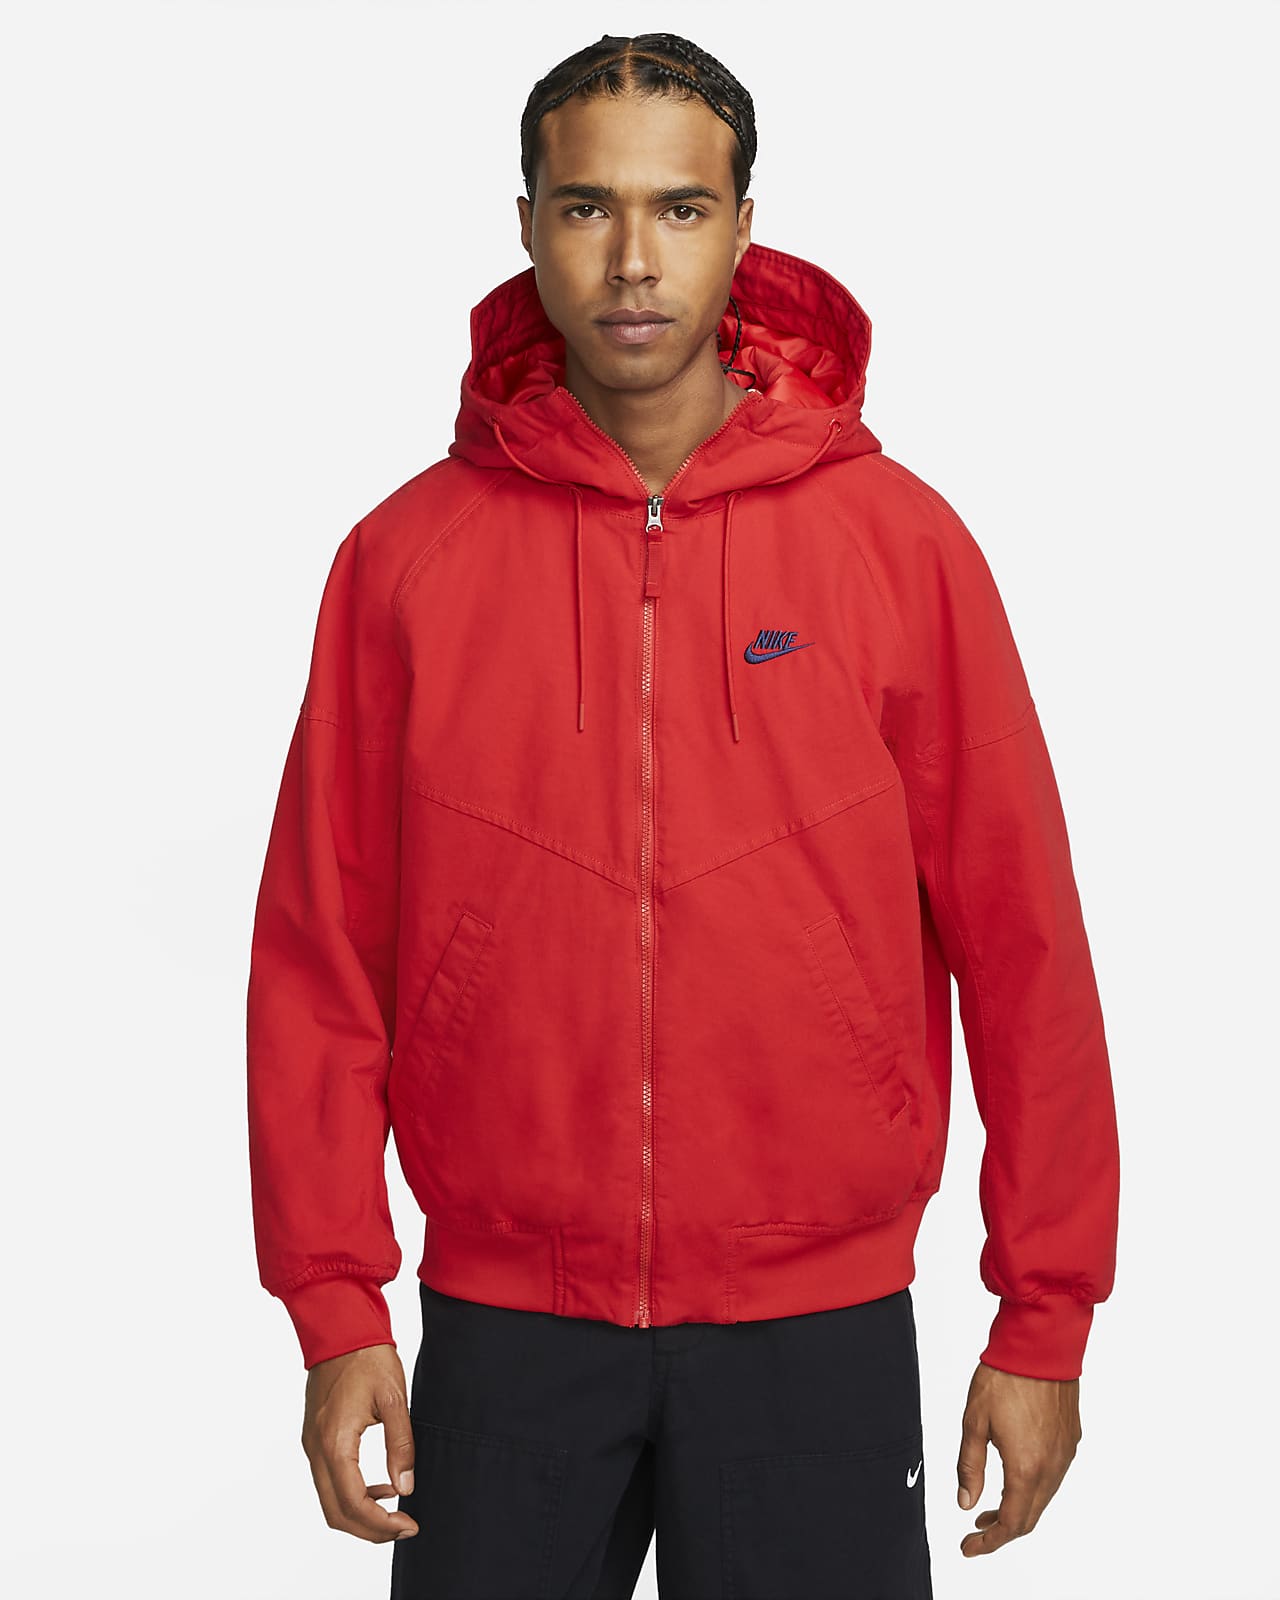 Nike Sportswear Windrunner Canvas Men's Hooded Jacket. LU